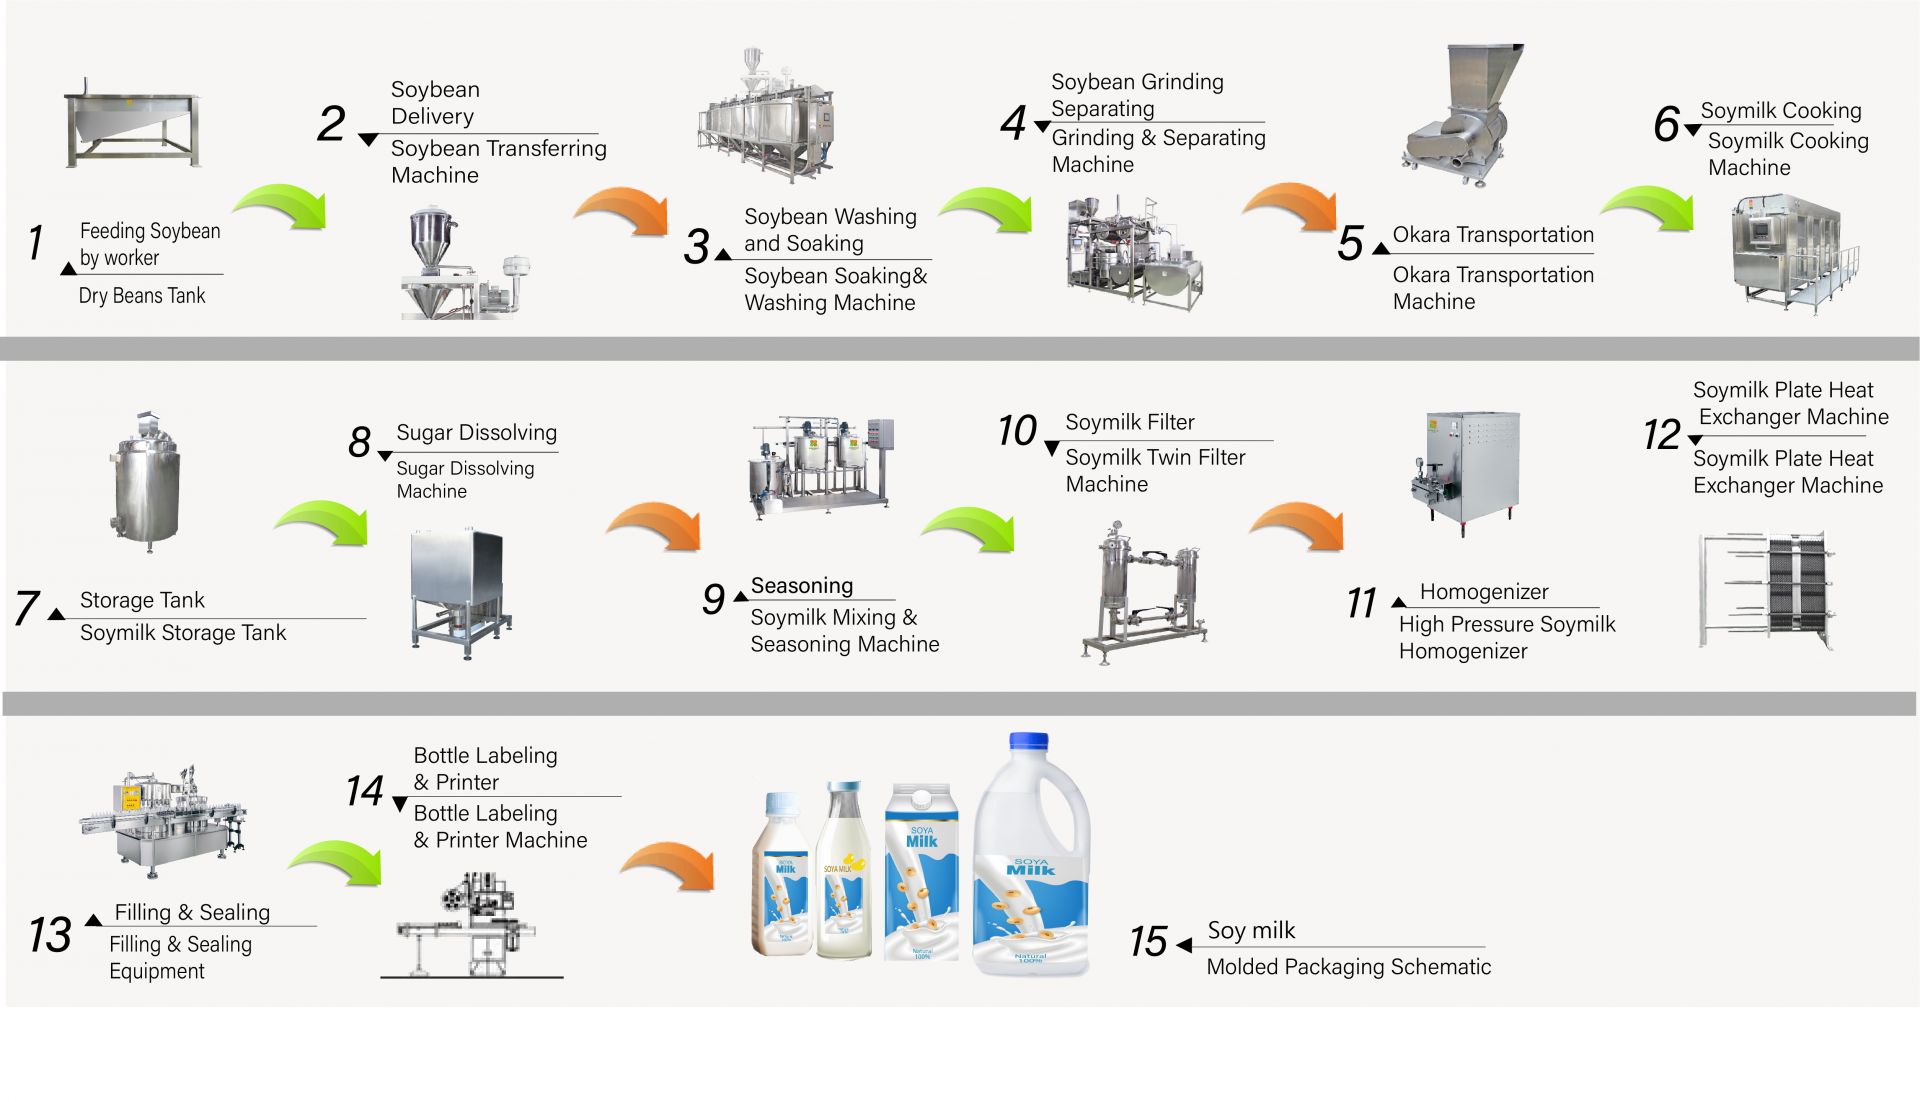 El proceso de hacer leche de soja en la fábrica, Cómo hacer leche de soja, Producir leche de soja, diagrama de flujo de leche de soja, Proceso de elaboración de leche de soja, Proceso de fabricación de leche de soja, proceso de leche de soja, diagrama de flujo del proceso de leche de soja, Flujo de proceso de elaboración de leche de soja, Proceso de procesamiento de leche de soja, producción de leche de soja, diagrama de flujo de producción de leche de soja, proceso de producción de leche de soja, diagrama de flujo de procesamiento de soja, máquina automática de leche de soja, máquina automática para hacer leche de soja, fabricante de tofu fácil, producción industrial de leche de soja, fabricación industrial de leche de soja, máquina industrial de leche de soja, Máquina industrial de tofu, máquina de leche vegetal, máquina de producción de leche vegetal, producción de leche de soja, Máquina de bebidas de soja, Línea de producción de bebidas de soja, Máquina de bebidas de soja, máquina comercial de leche de soja y tofu, máquina para hacer leche de soja y tofu, maquinaria y equipo para bebidas de leche de soja, Máquina de cocinar leche de soja, fábrica de leche de soja, máquina de leche de soja, máquina de leche de soja comercial, Máquina de leche de soja hecha en Taiwán, Maquinaria de leche de soja, Maquinaria y equipo de leche de soja, Fabricante de leche de soja, Máquina para hacer leche de soja, fabricantes de leche de soja, Producción de leche de soja, equipo de producción de leche de soja, fábrica de producción de leche de soja, línea de producción de leche de soja, precio de la máquina para hacer leche de soja, máquina procesadora de soja, fábrica de leche de soja, máquina de leche de soja